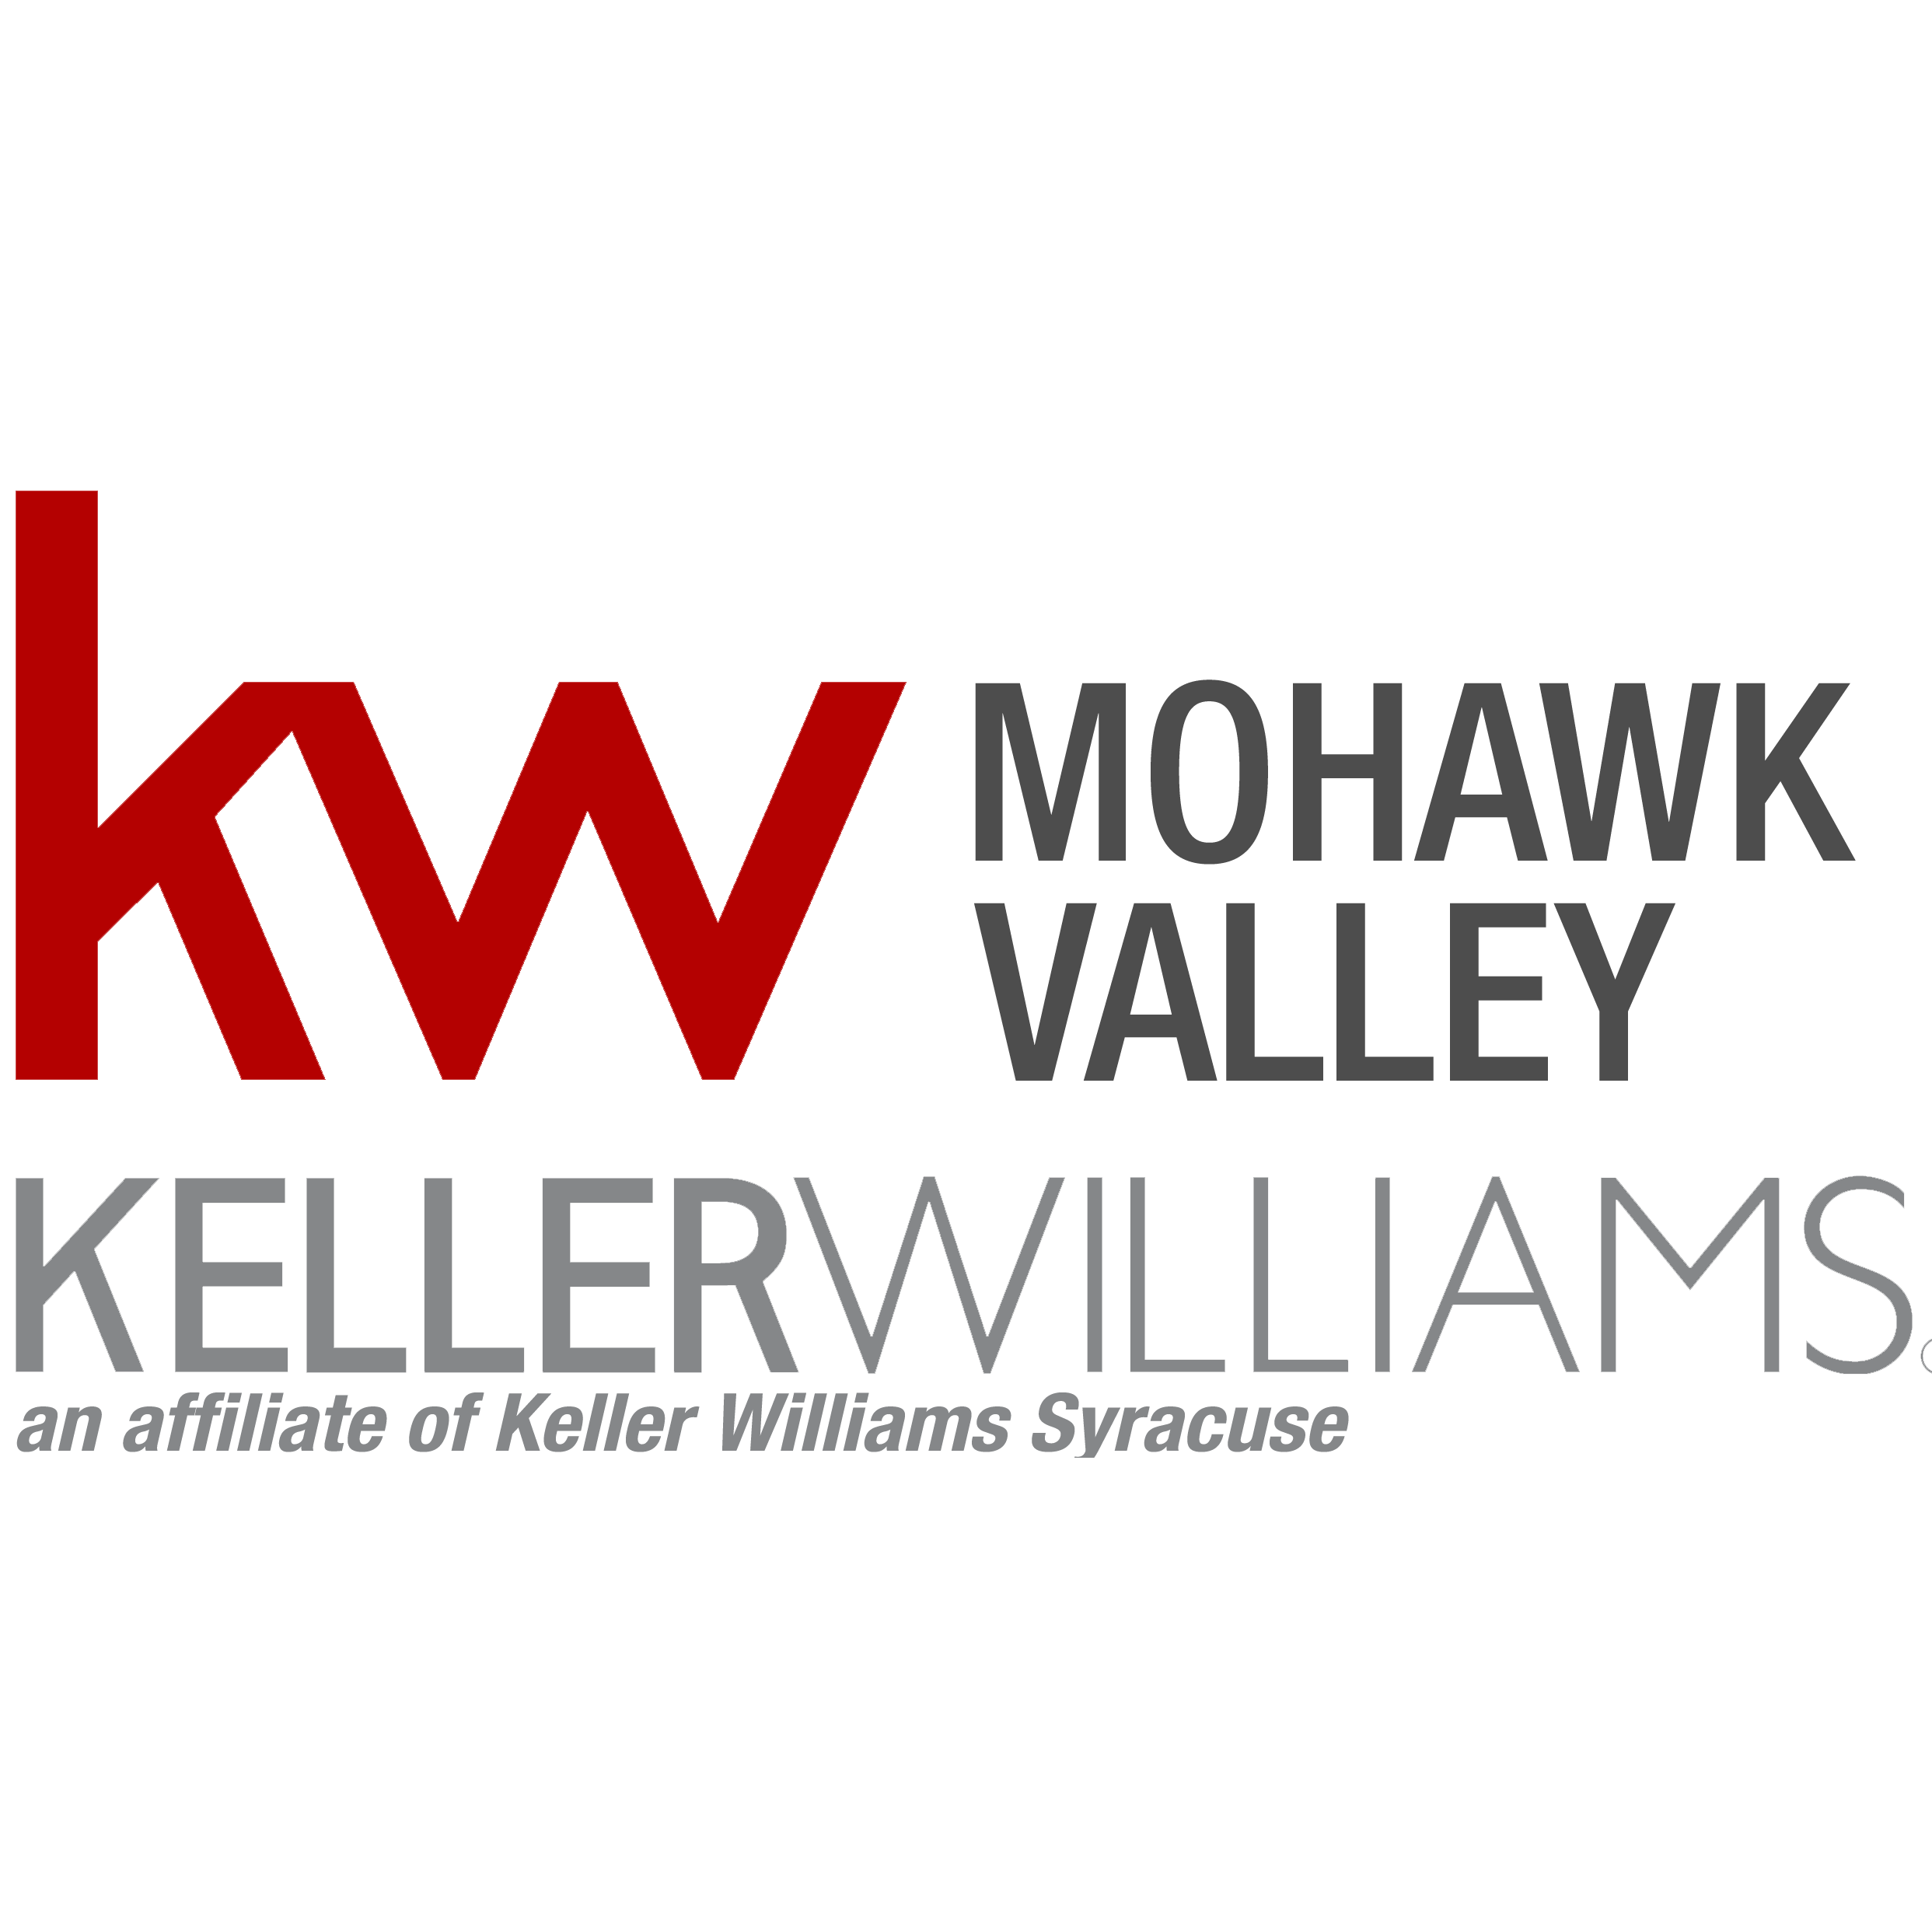 Katie Babcock - Keller Williams Mohawk Valley